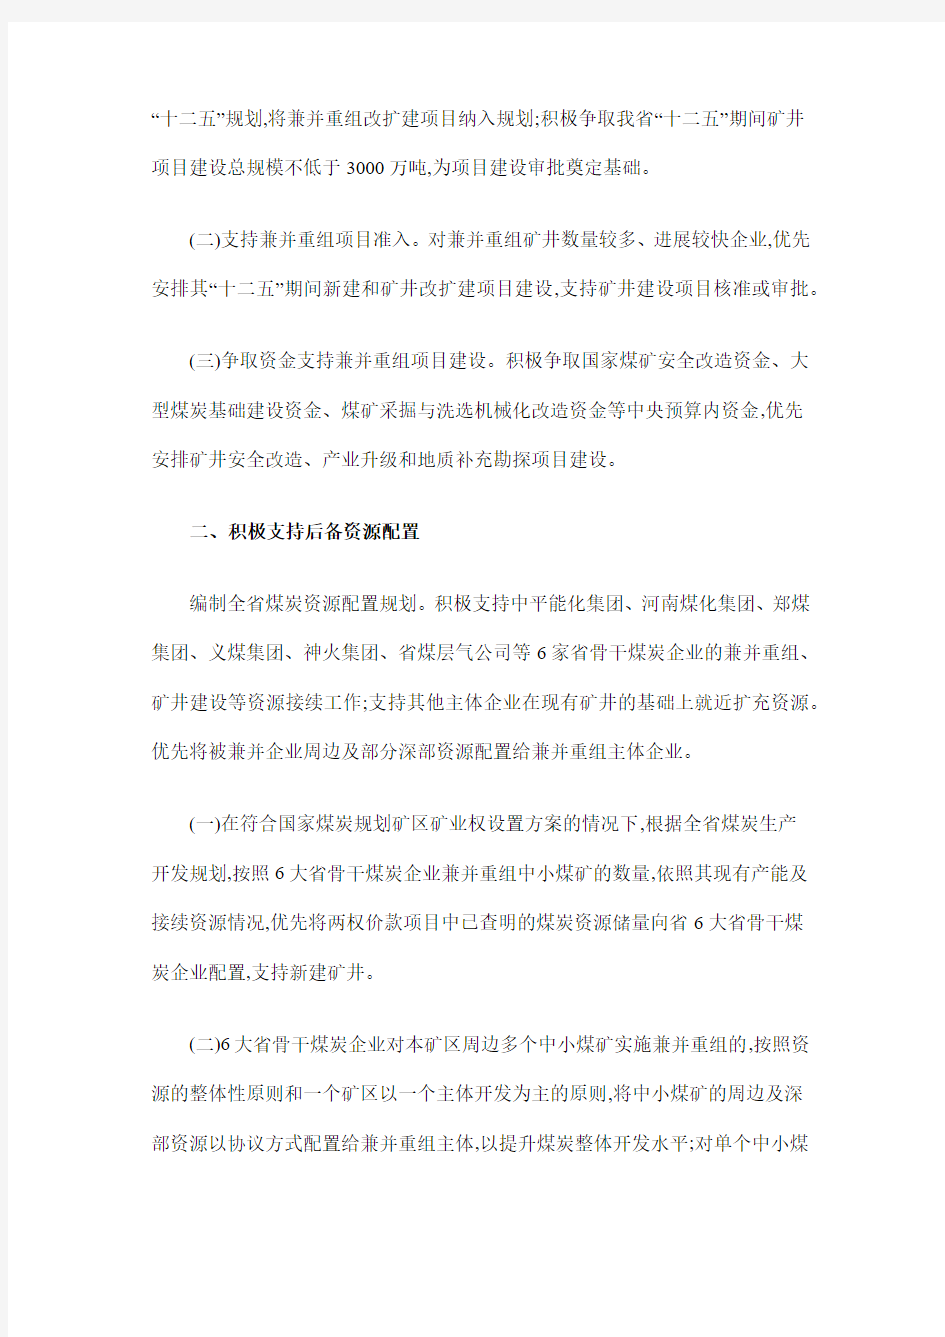 河南省人民政府办公厅关于转发省发展改革委等部门支持煤炭企业兼并重组政策的通知5.27